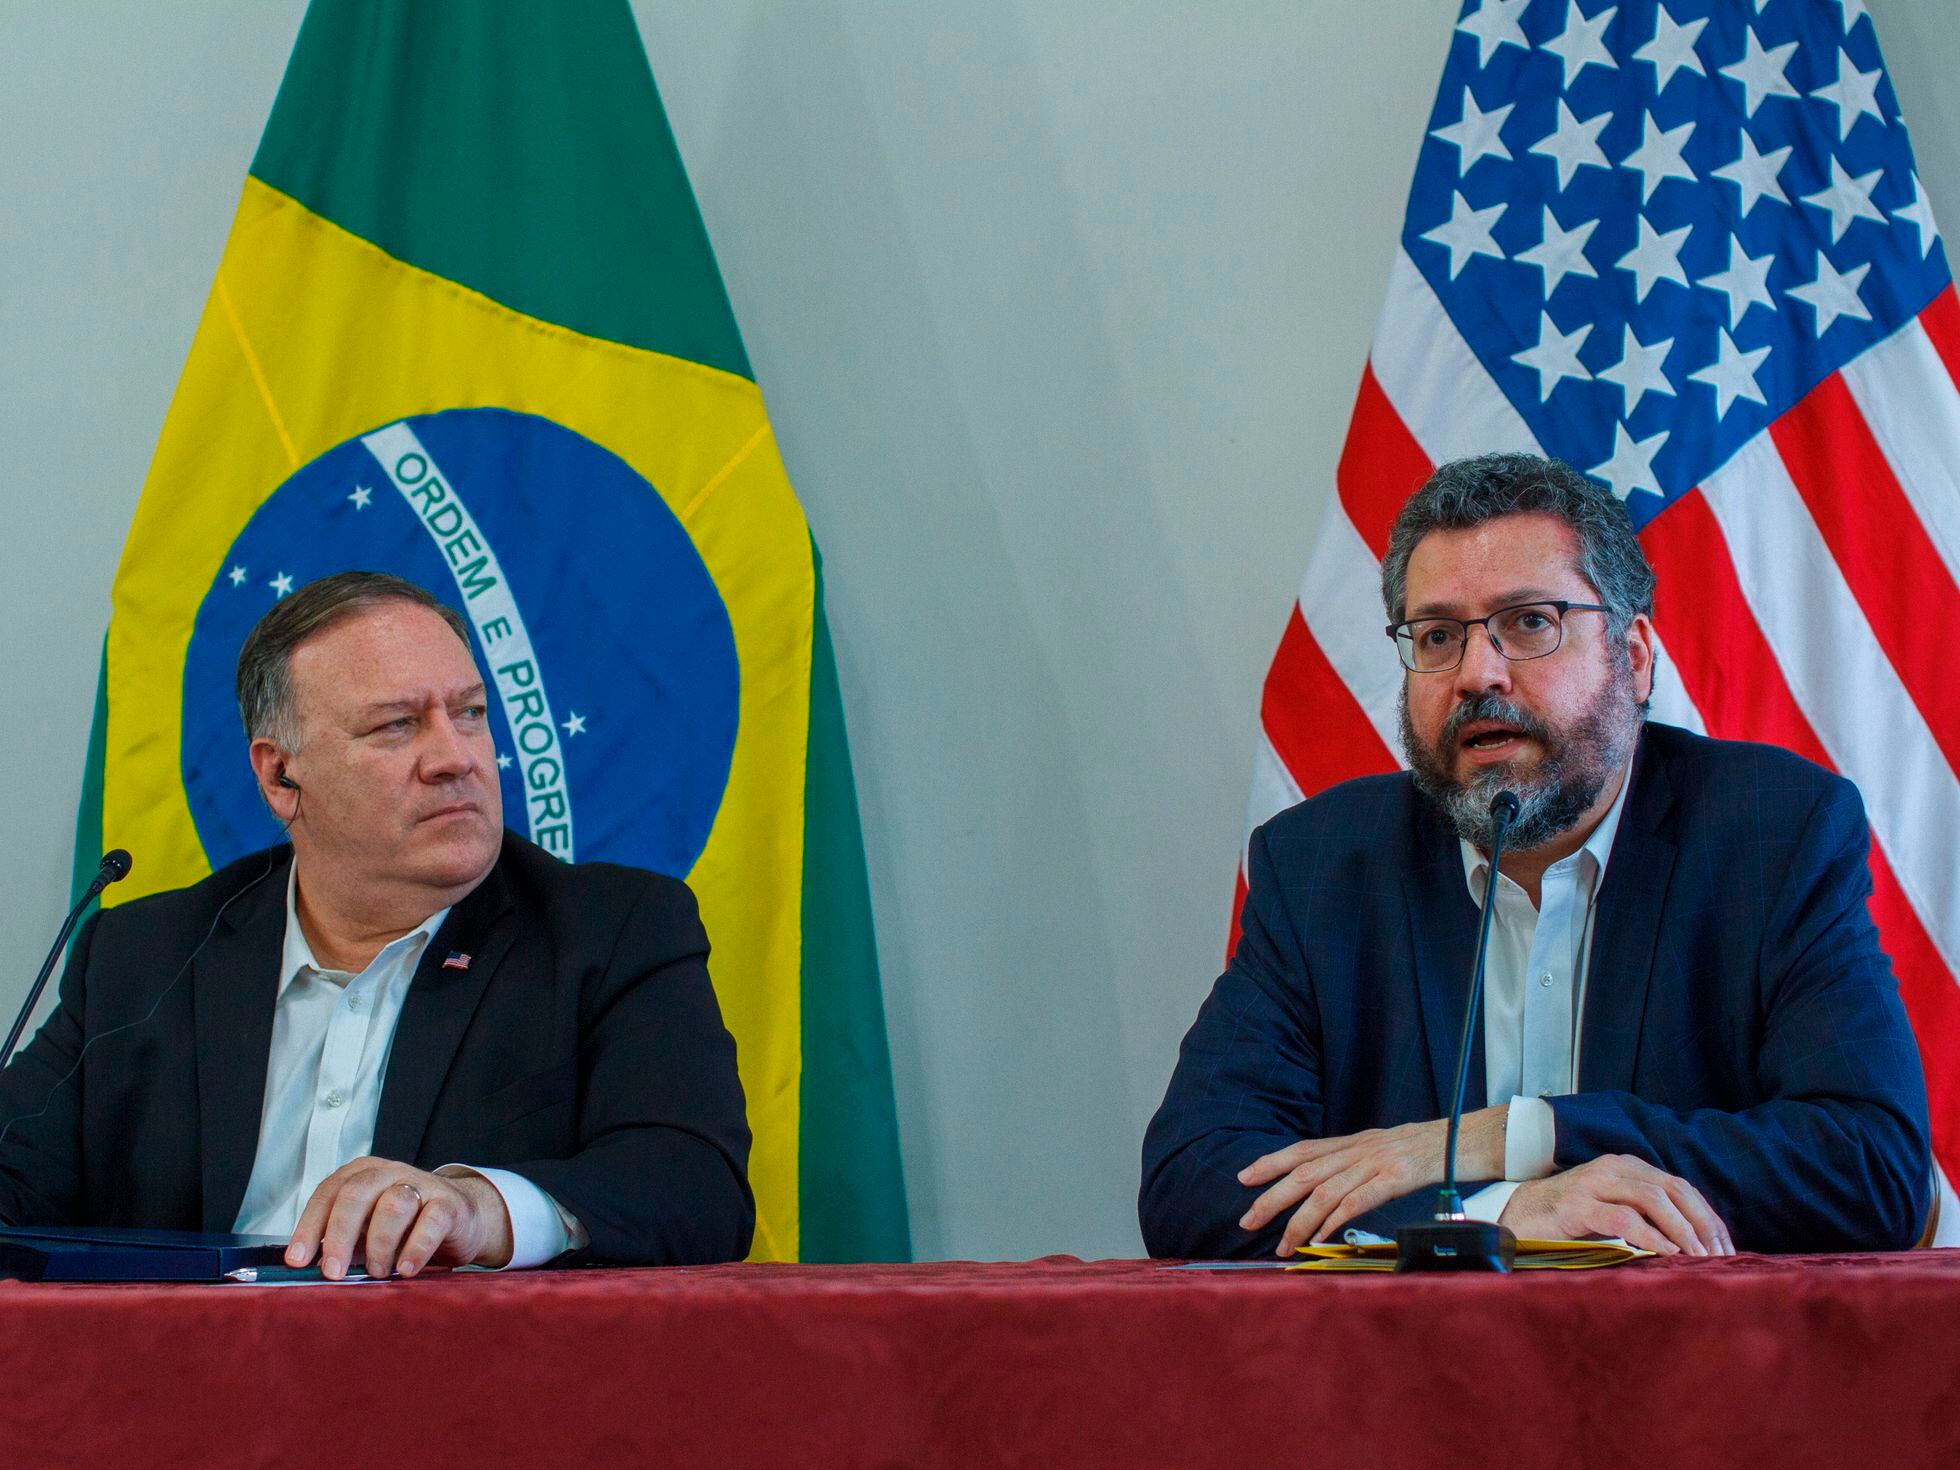 O que esperar das relações Brasil-EUA após as eleições? (I) - OPEU